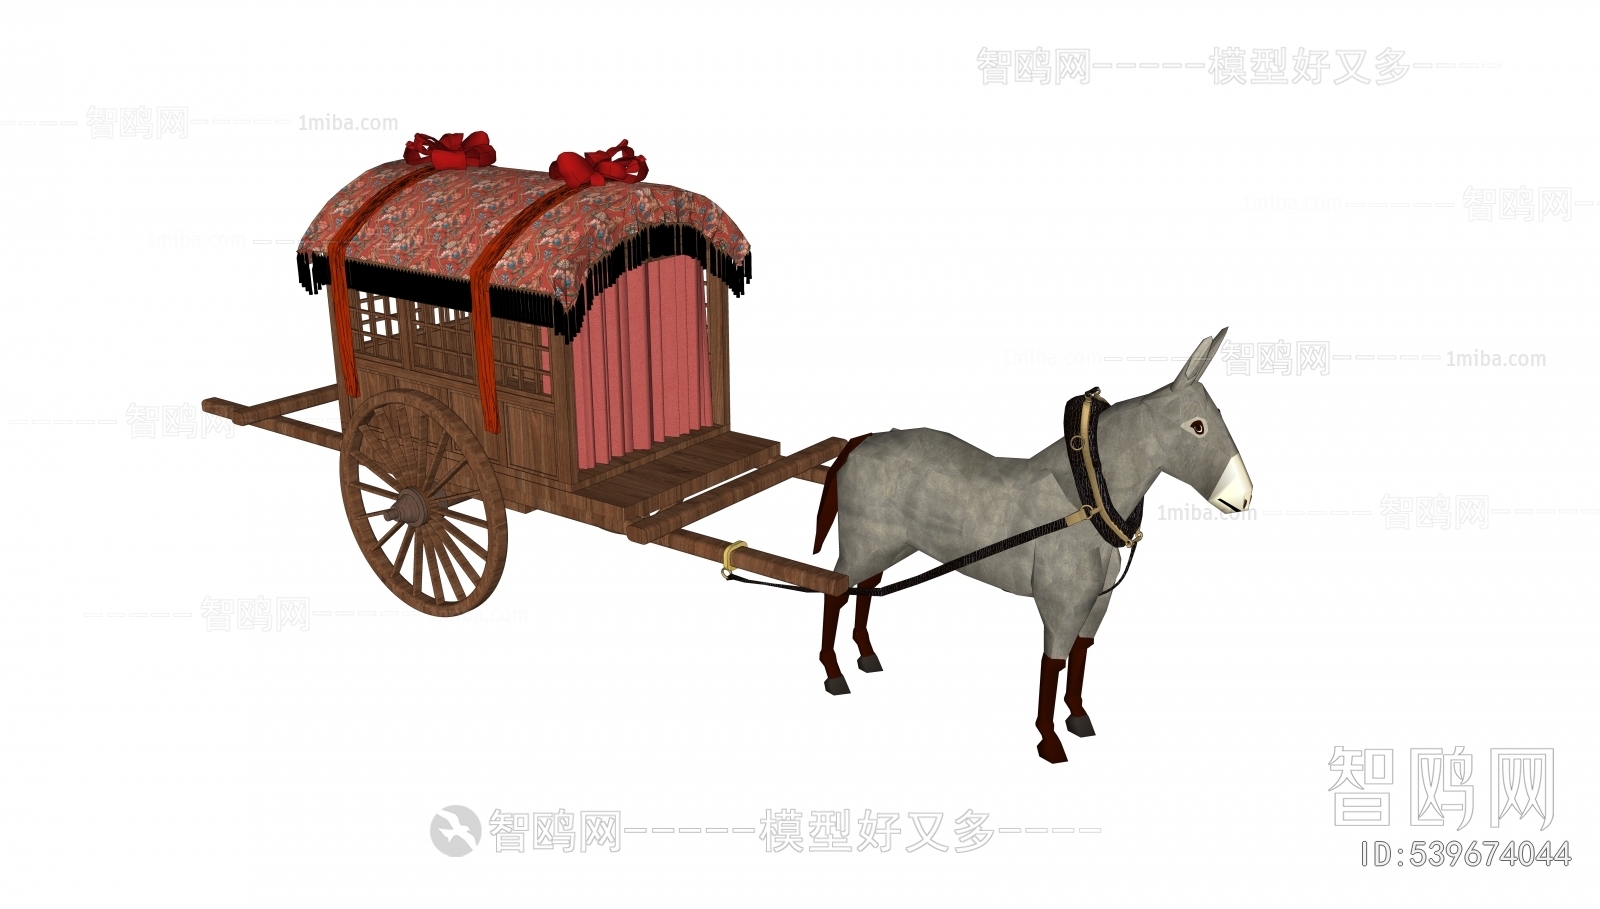 Chinese Style Vehicle